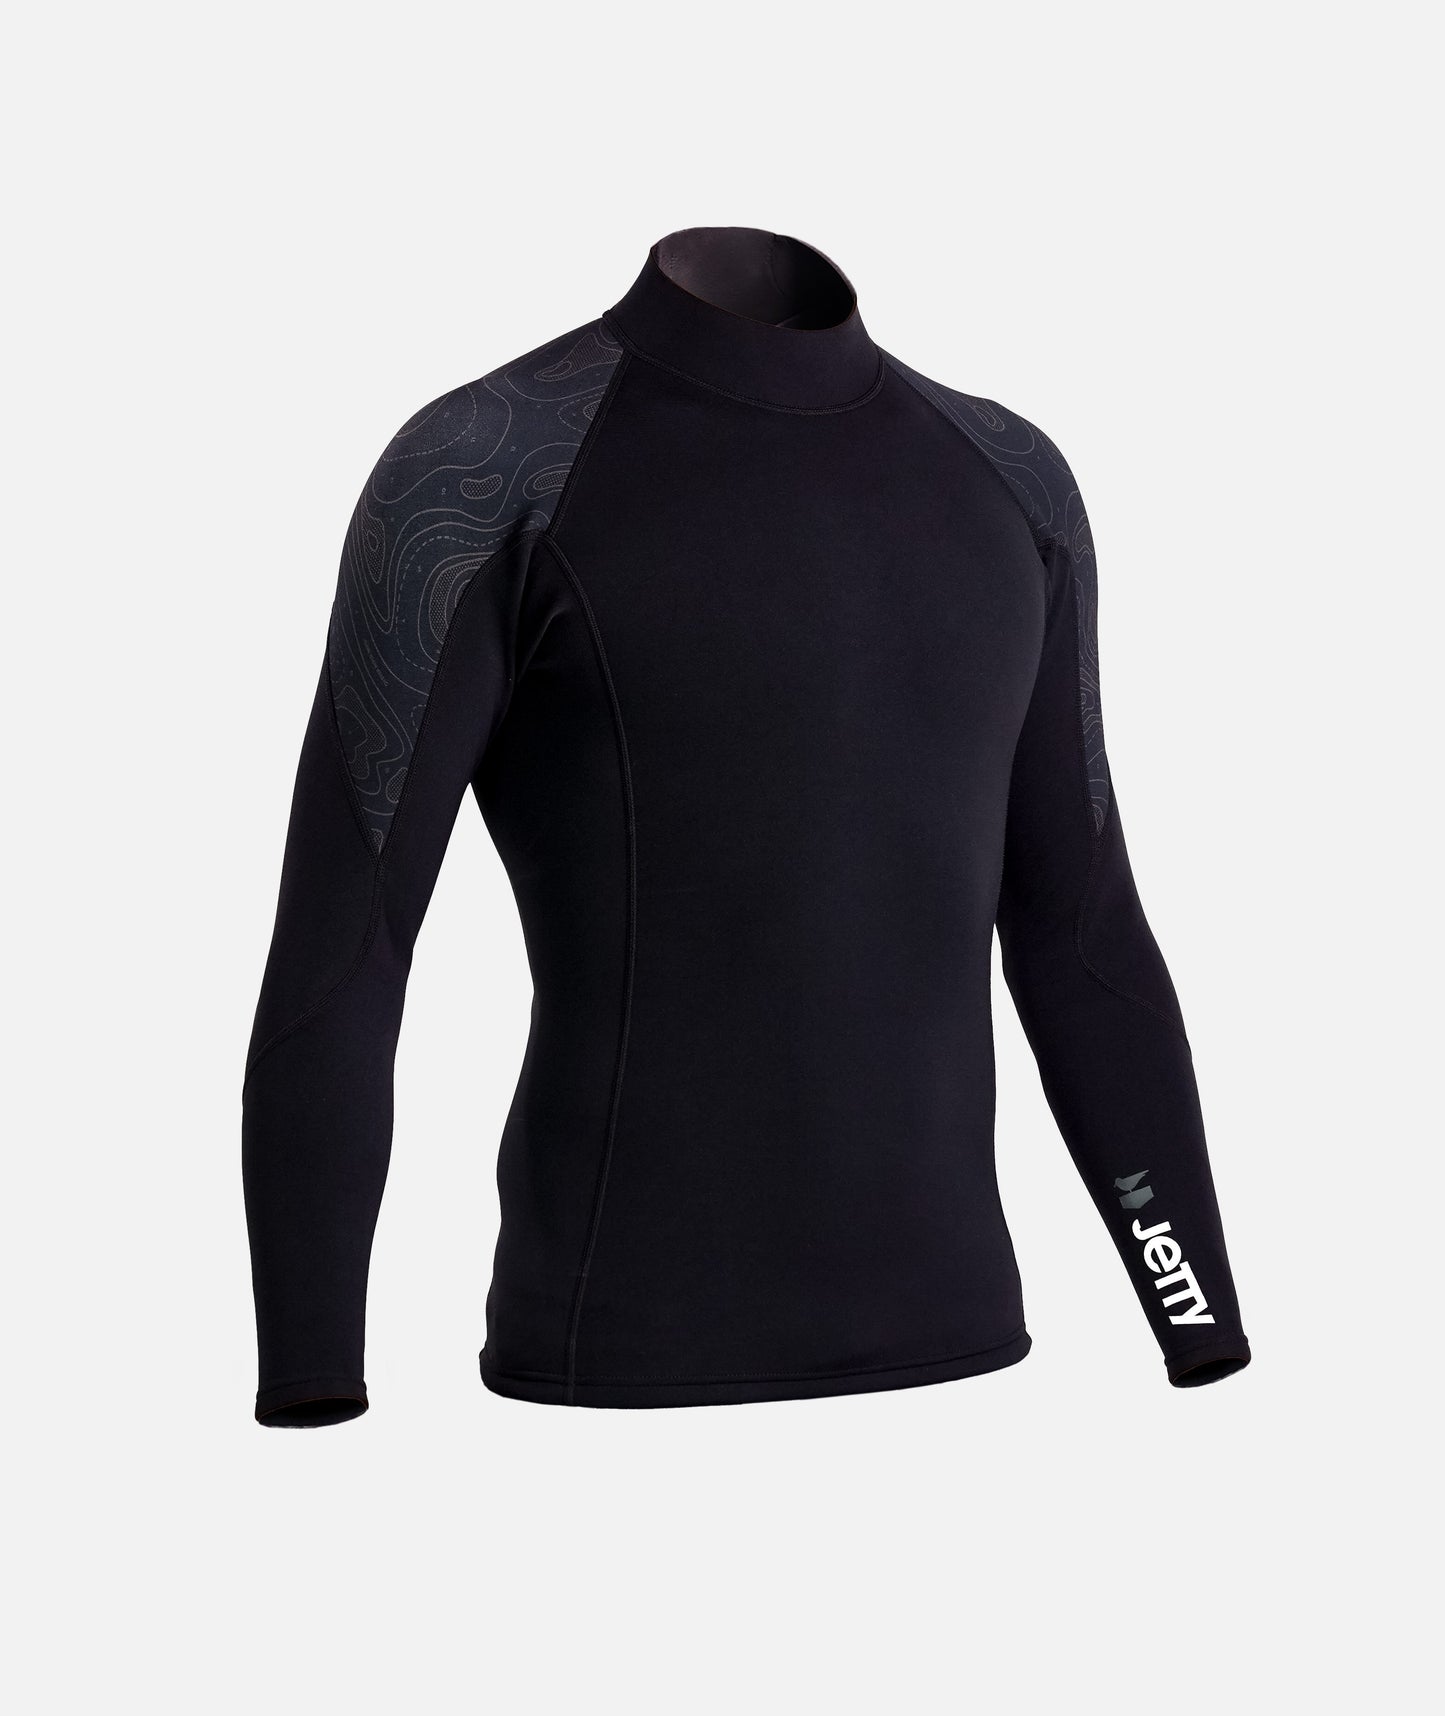 Long Sleeve Wetsuit Top - Black